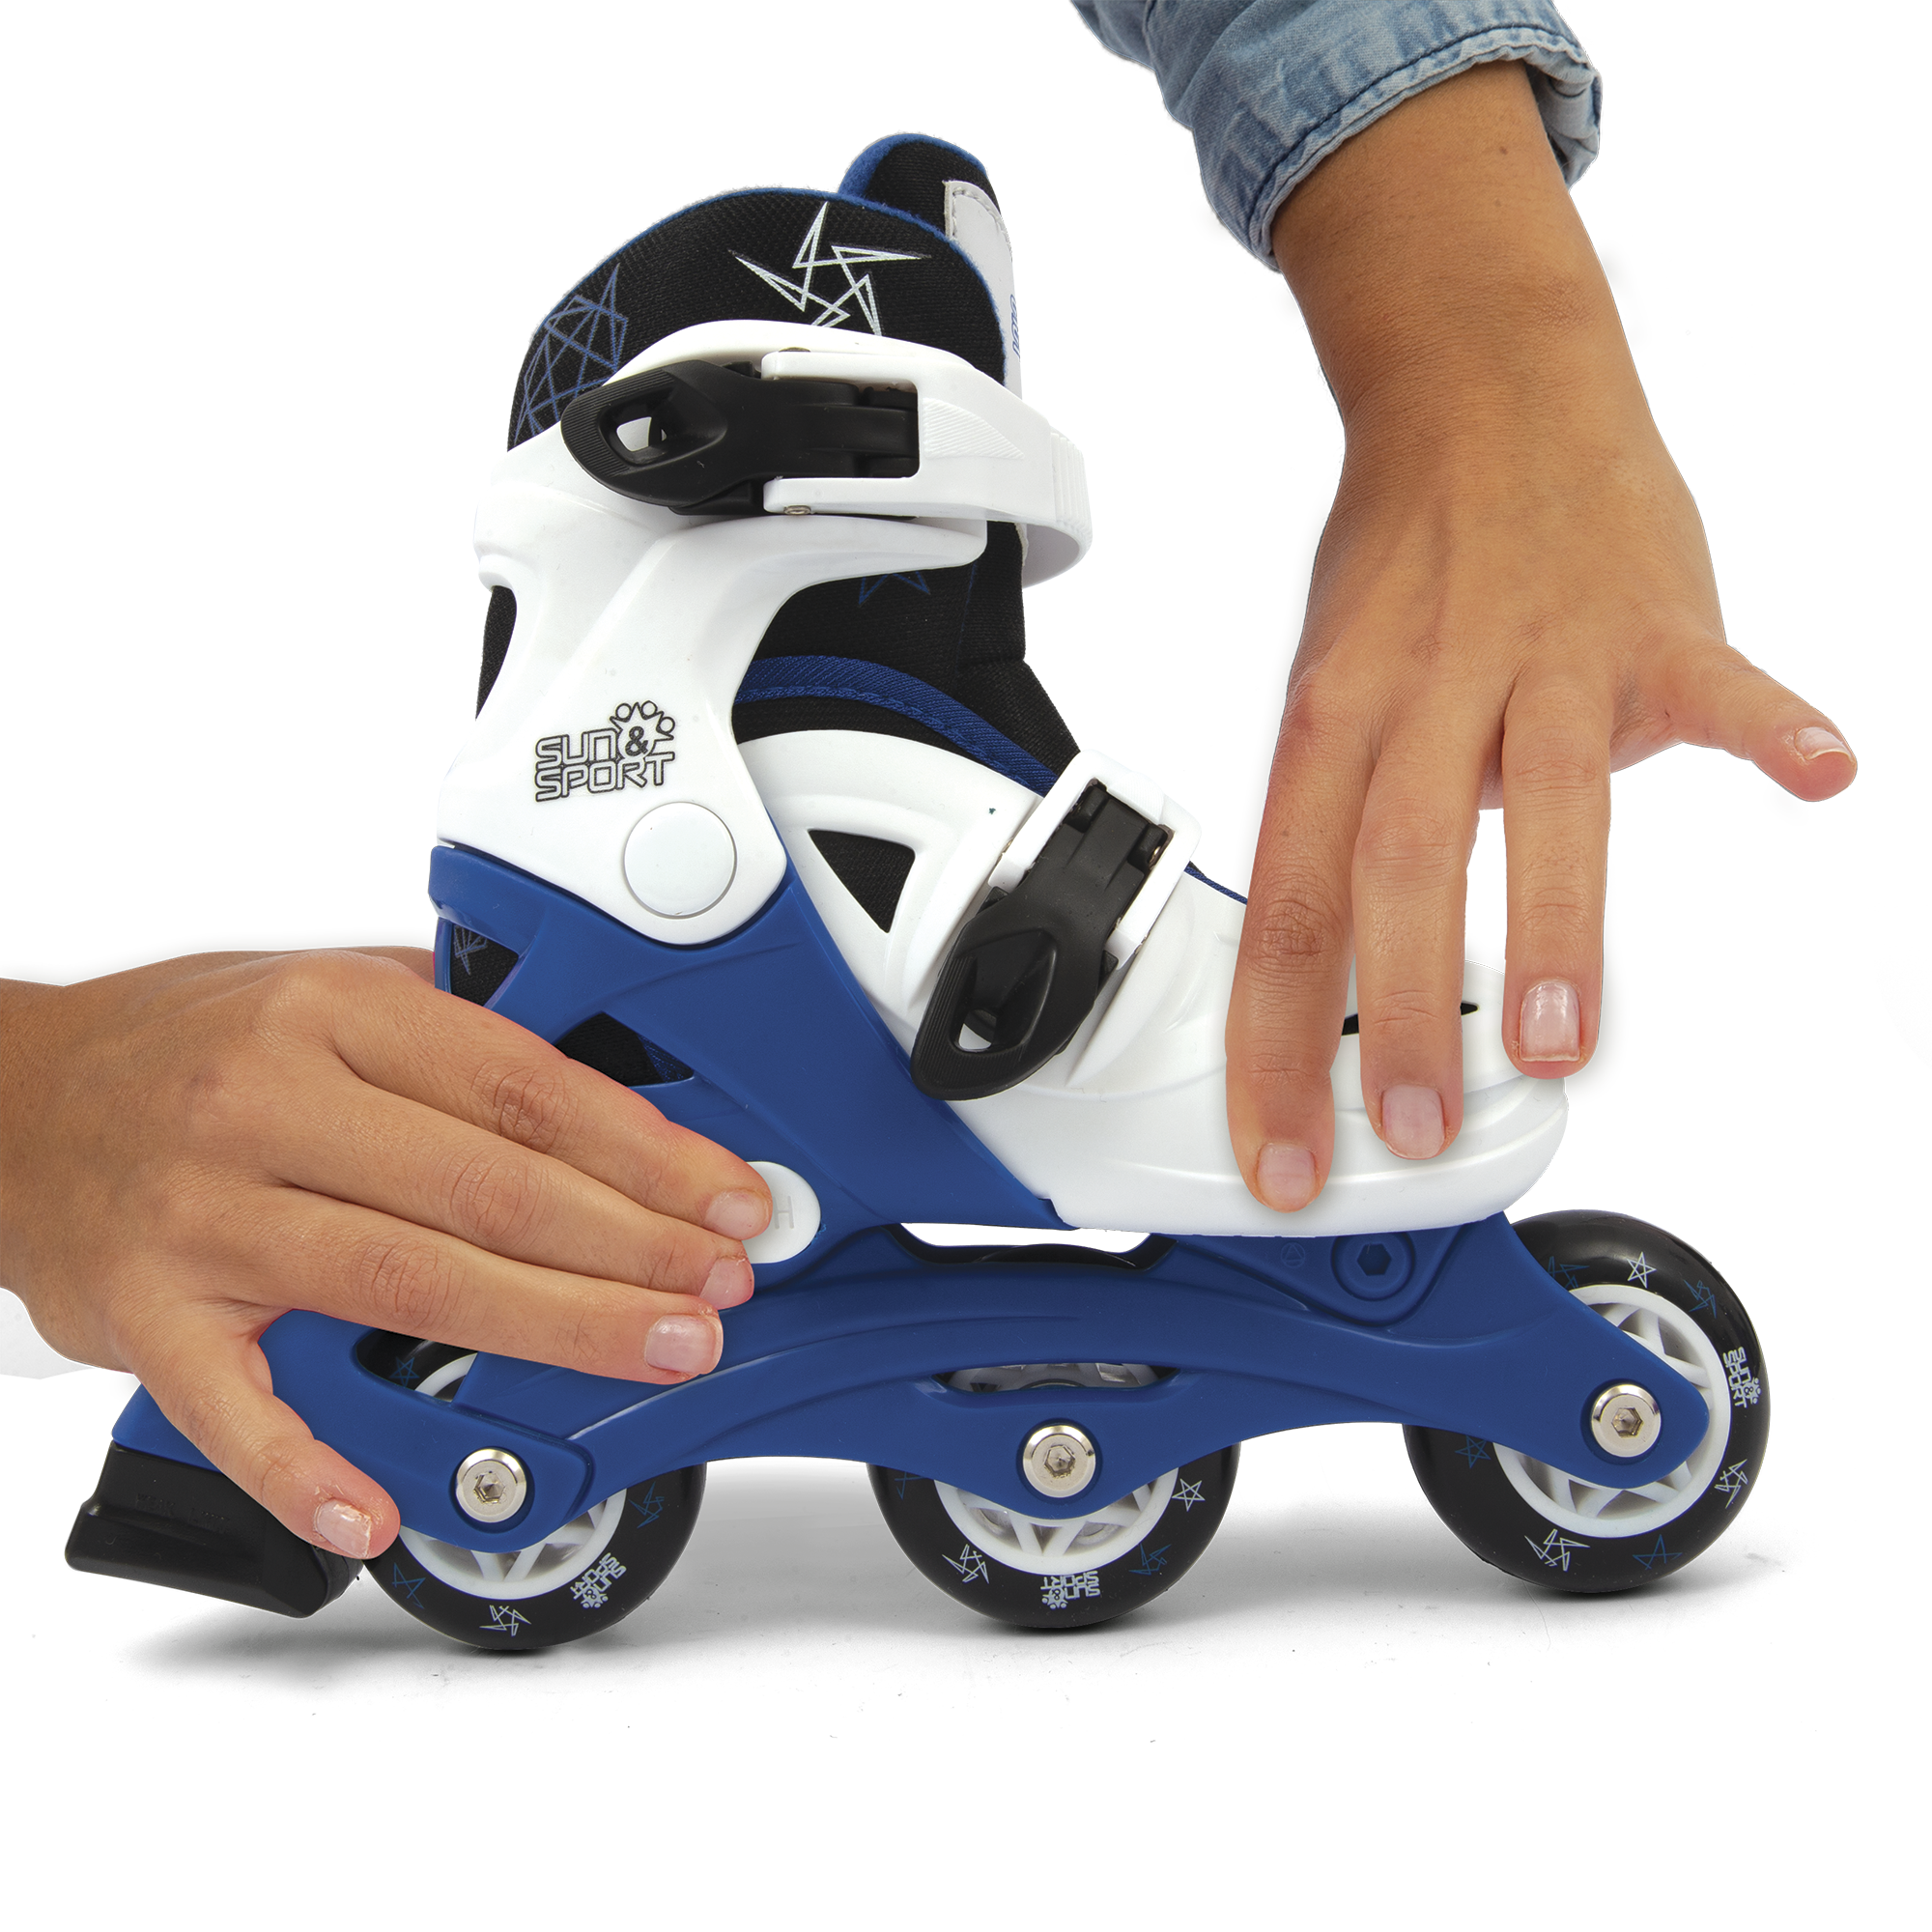 Pattini a 3 ruote regolabili con freno posteriore - misure da 26 a 30 per bambini- disponibile in blu e rosa - SUN&SPORT